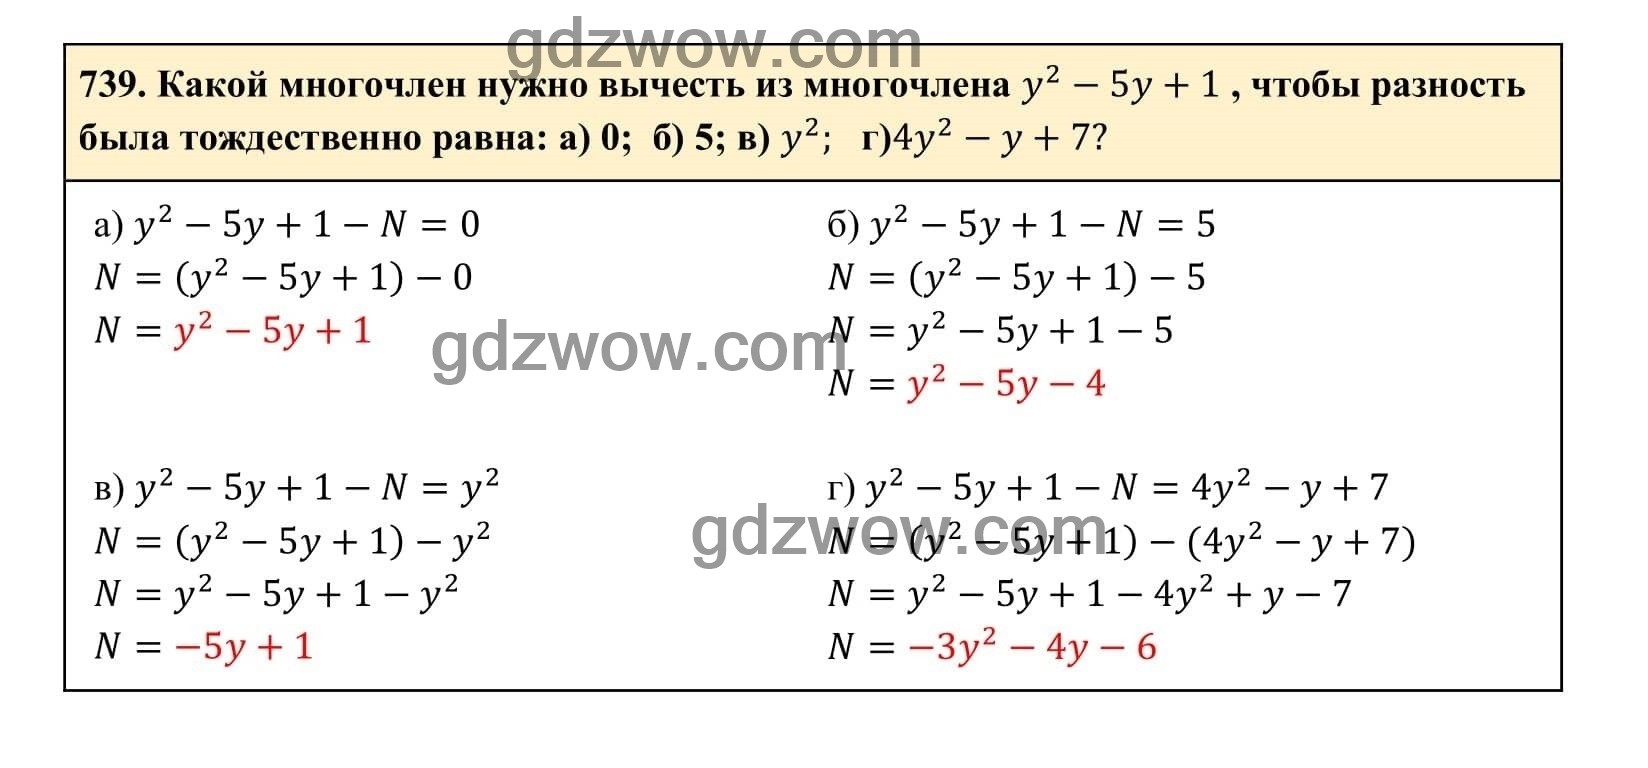 Упражнение 739 - ГДЗ по Алгебре 7 класс Учебник Макарычев (решебник) - GDZwow